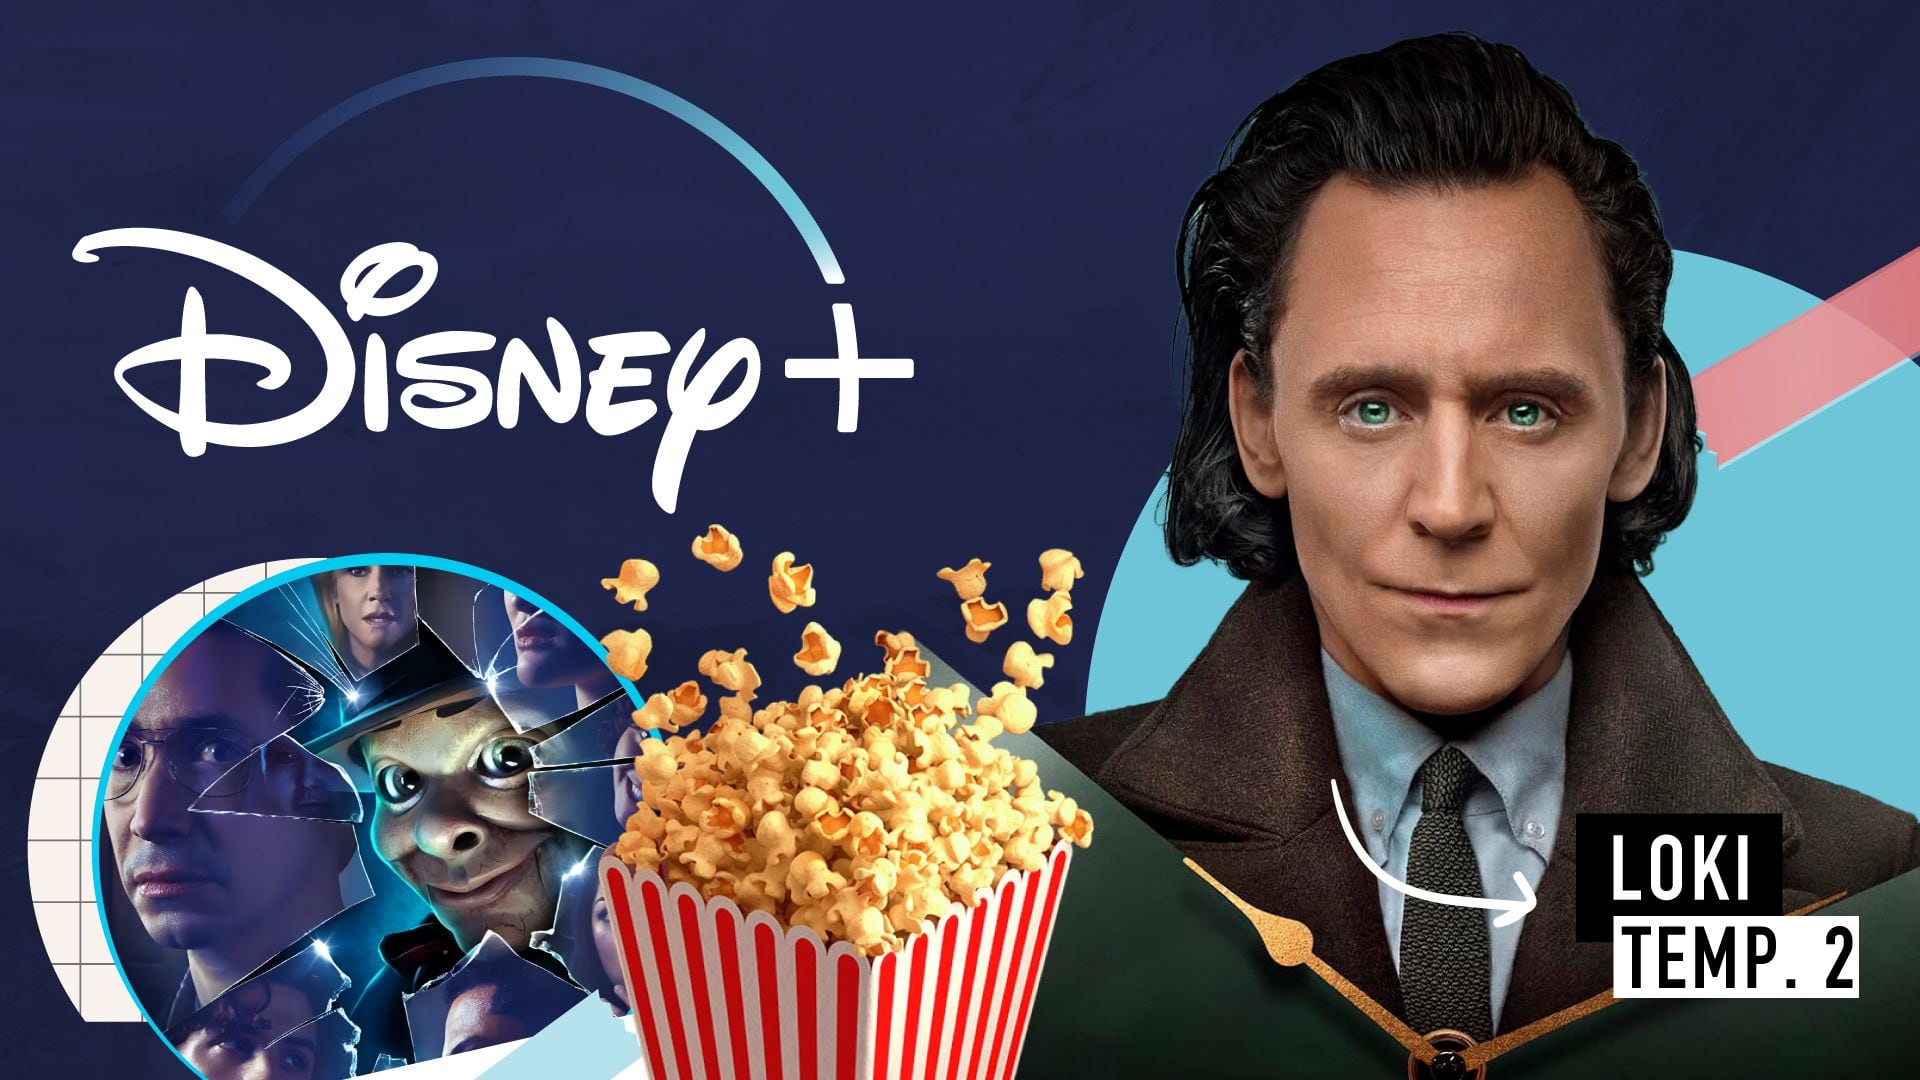 Estrenos de Disney+ en octubre: “Loki”, “Escalofríos: la serie”, “Hombre lobo por la noche” y más novedades